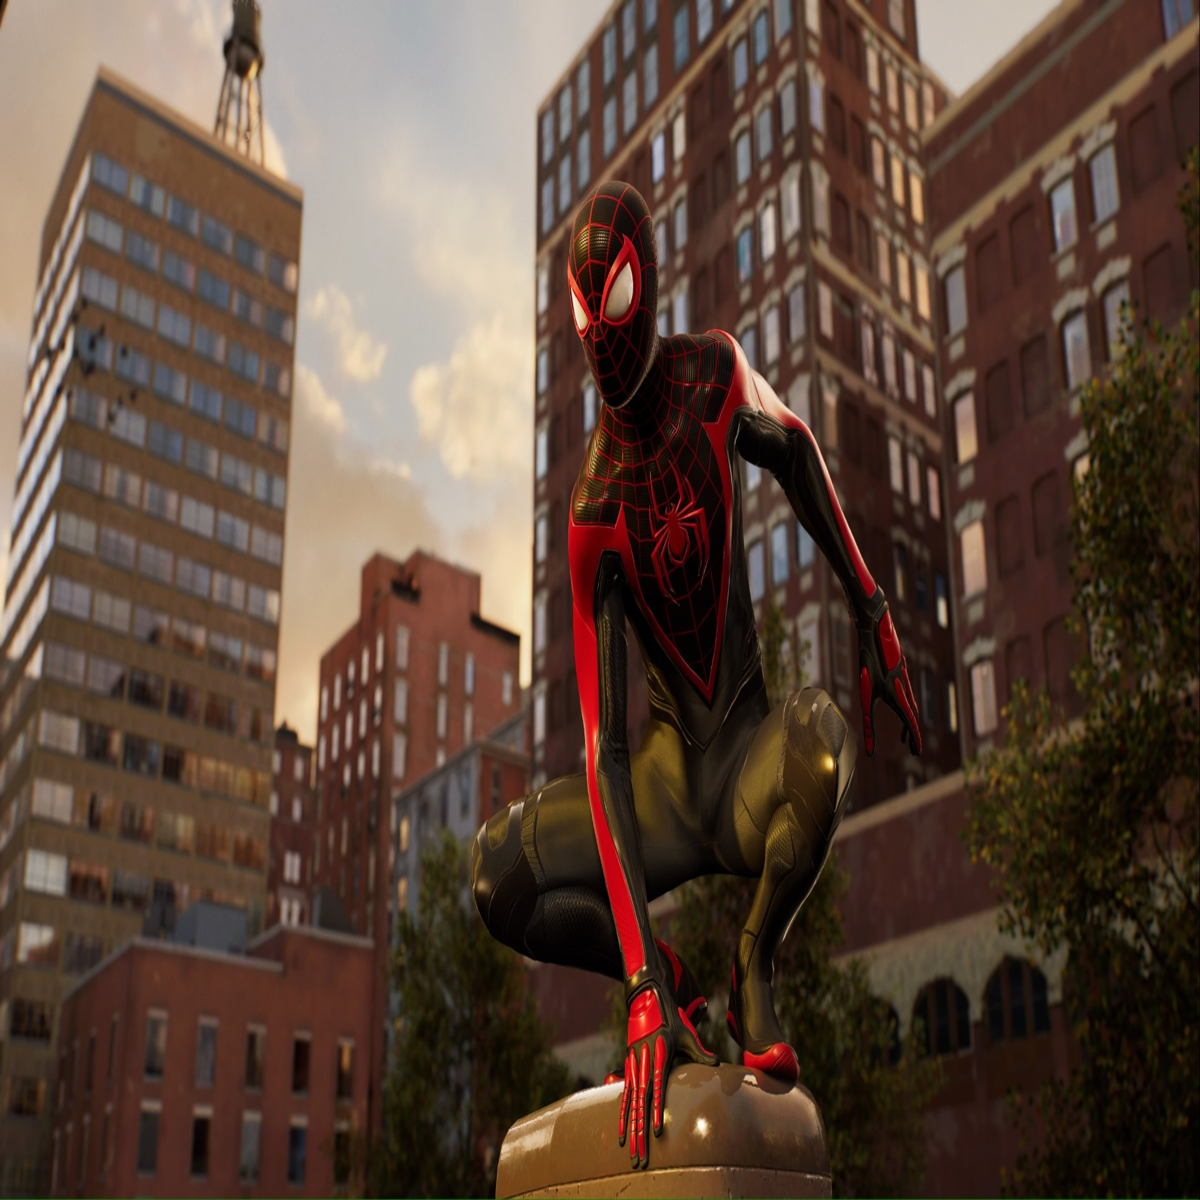 The Amazing Spider-Man 2 - Developer Walkthrough 